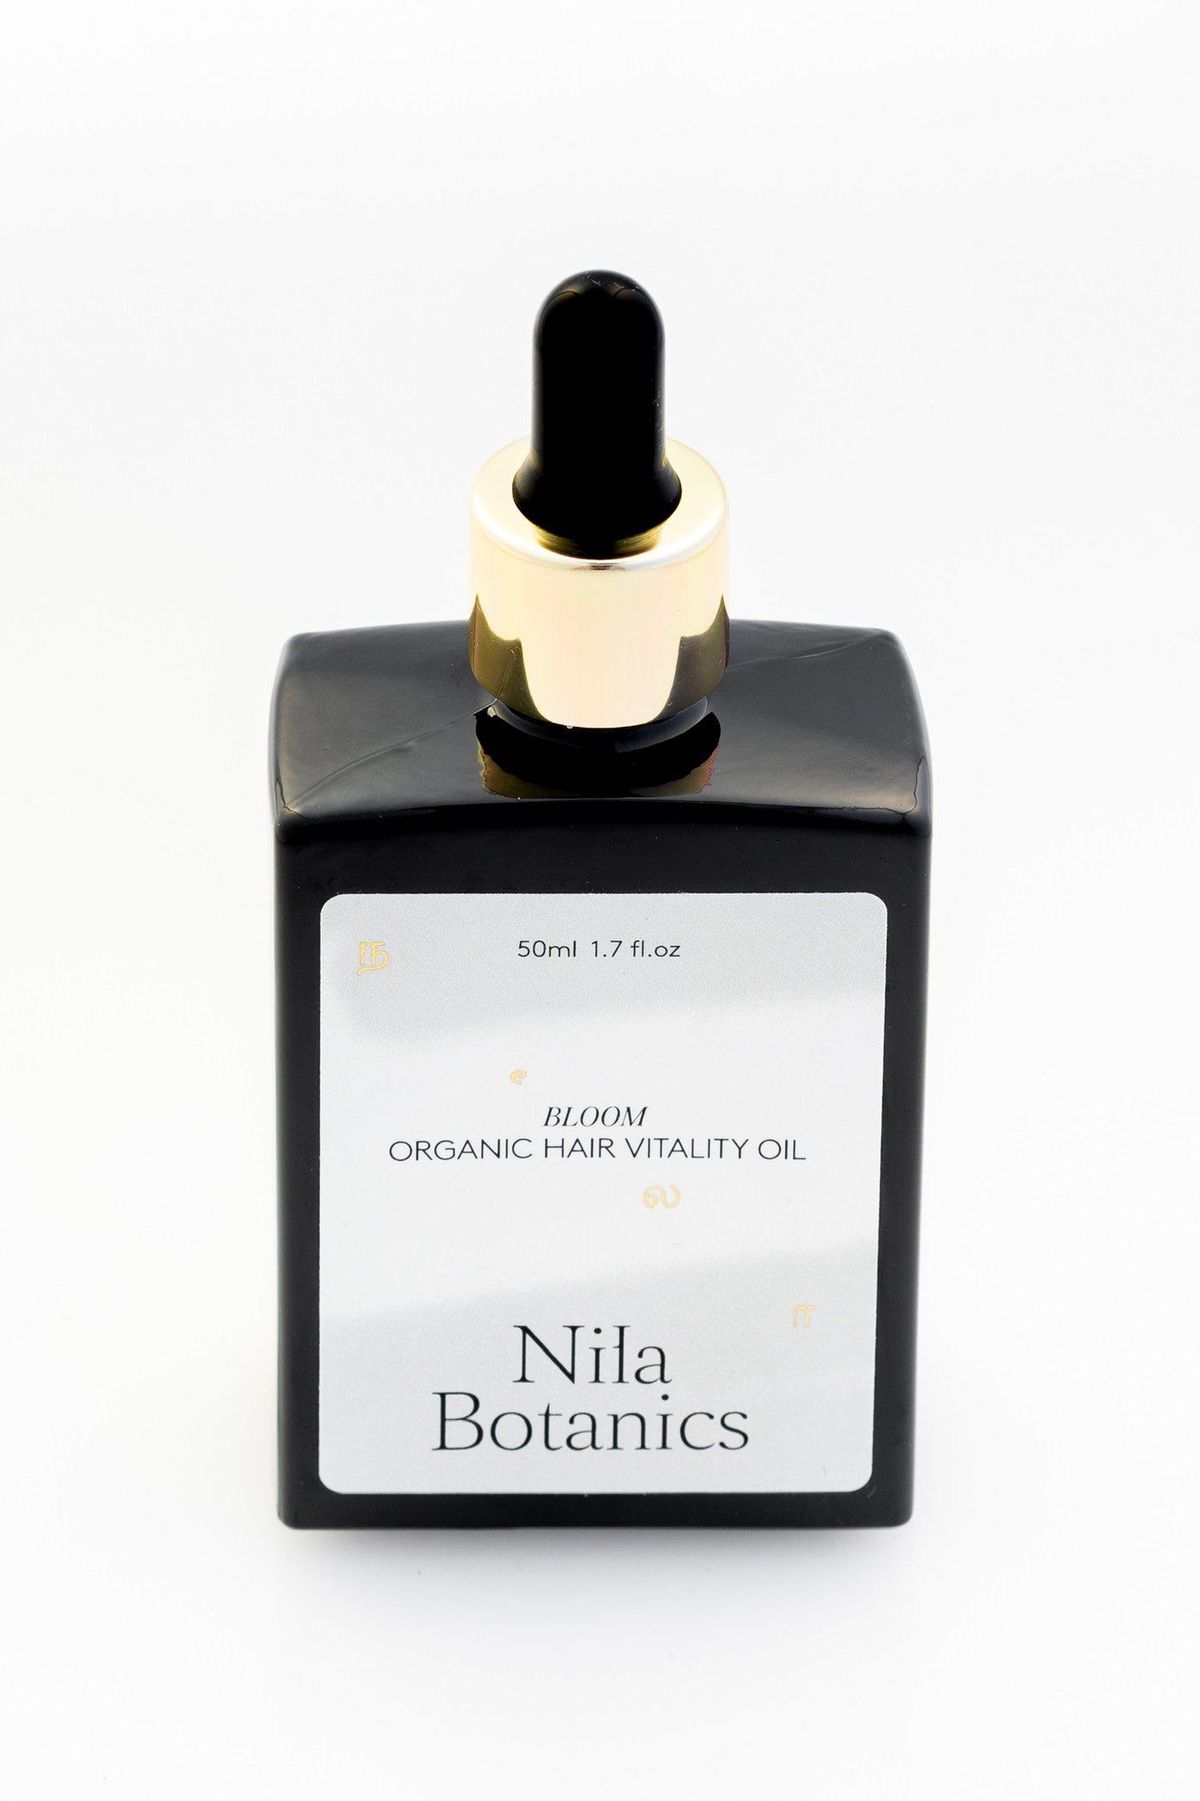 nila botanics bloom hair vitality oil